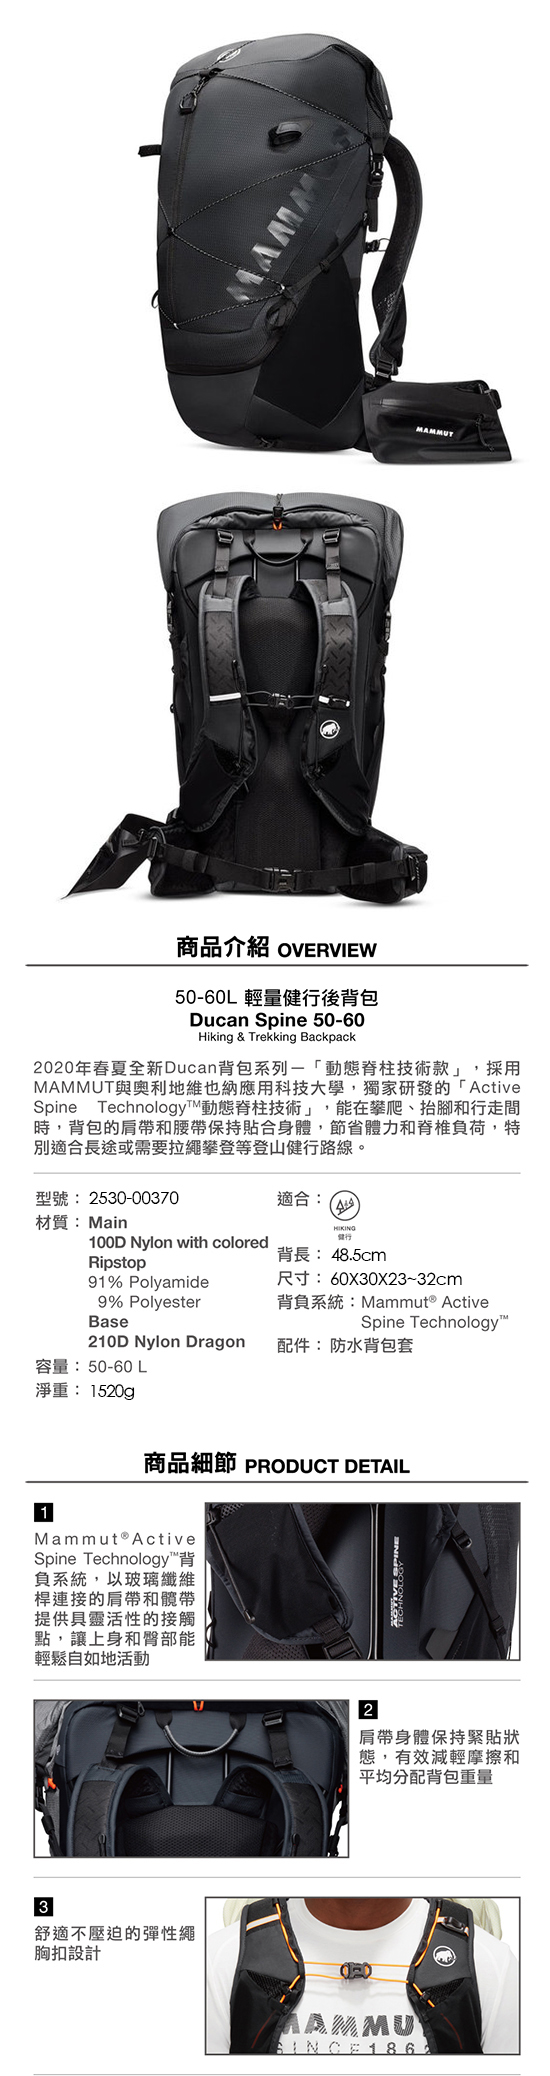 ducan_spine50-60-001.jpg